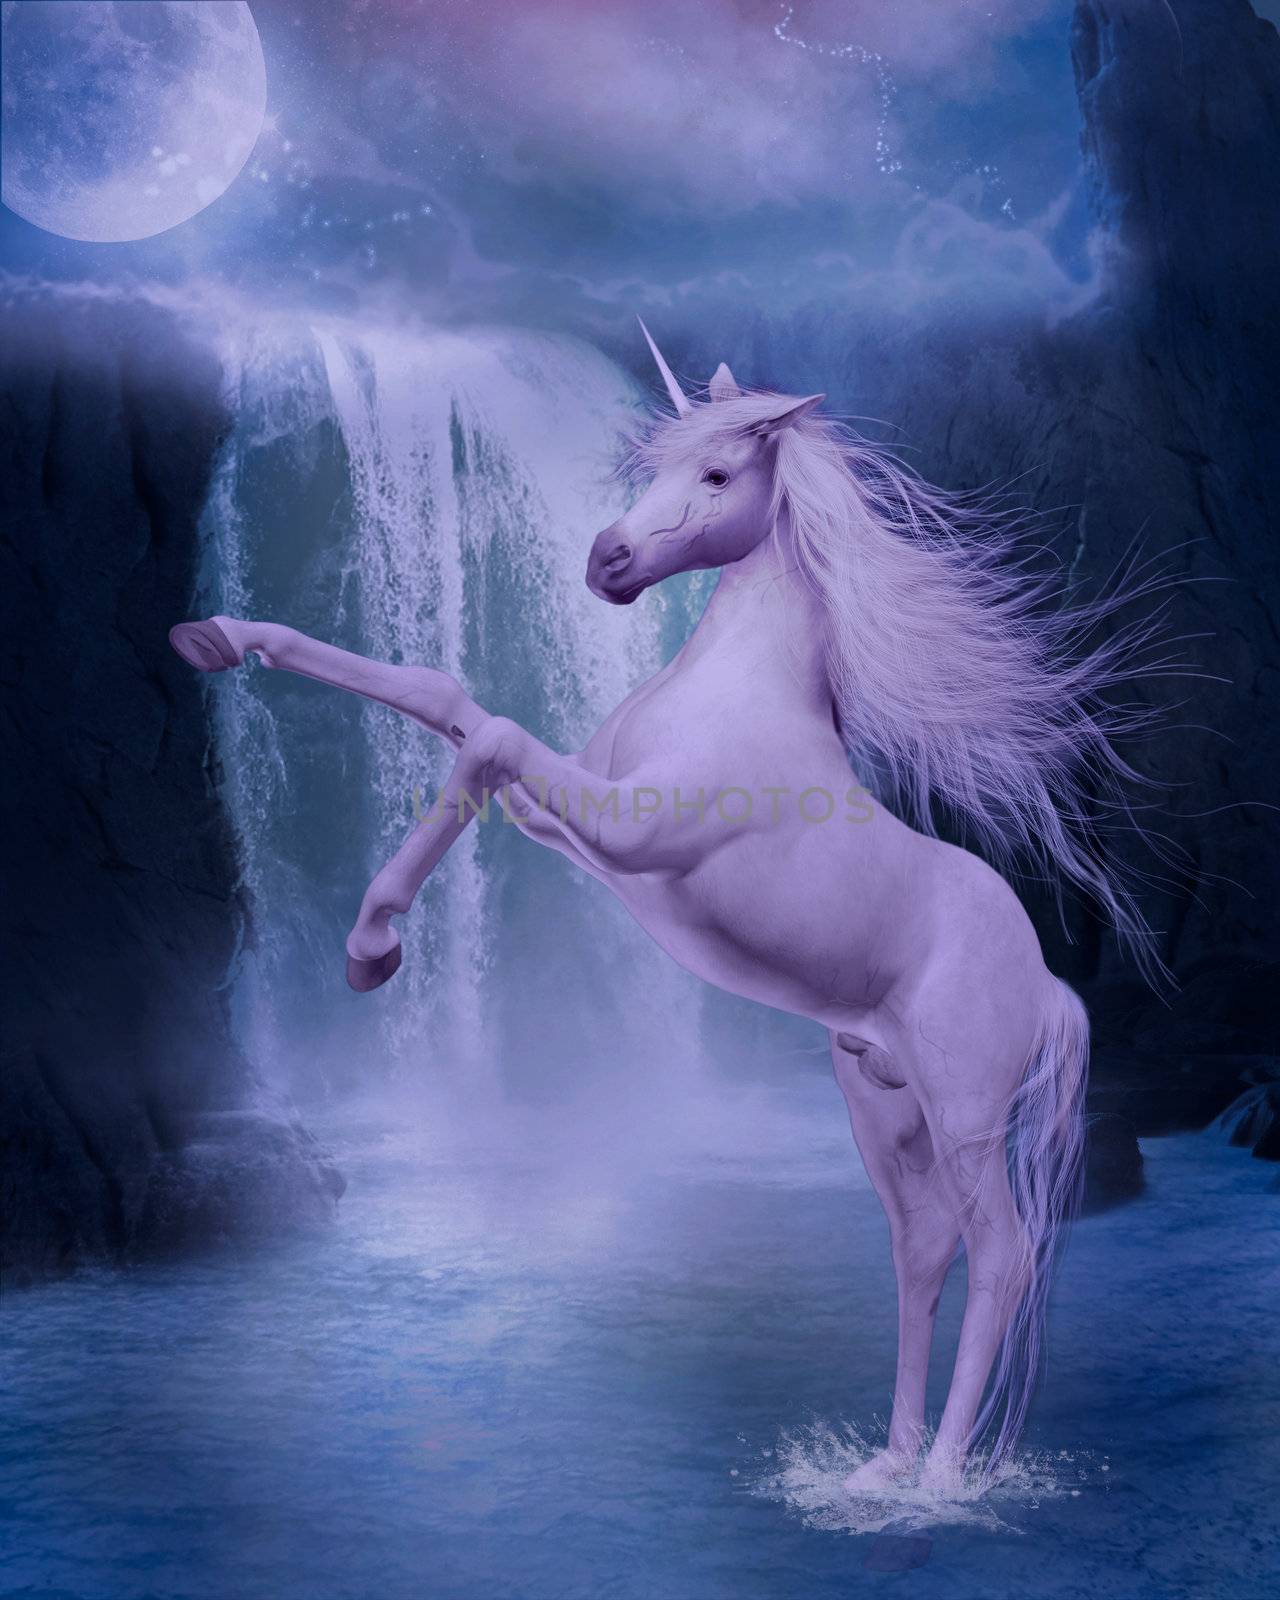 illustration of an unicorn







illustration off an unicorn